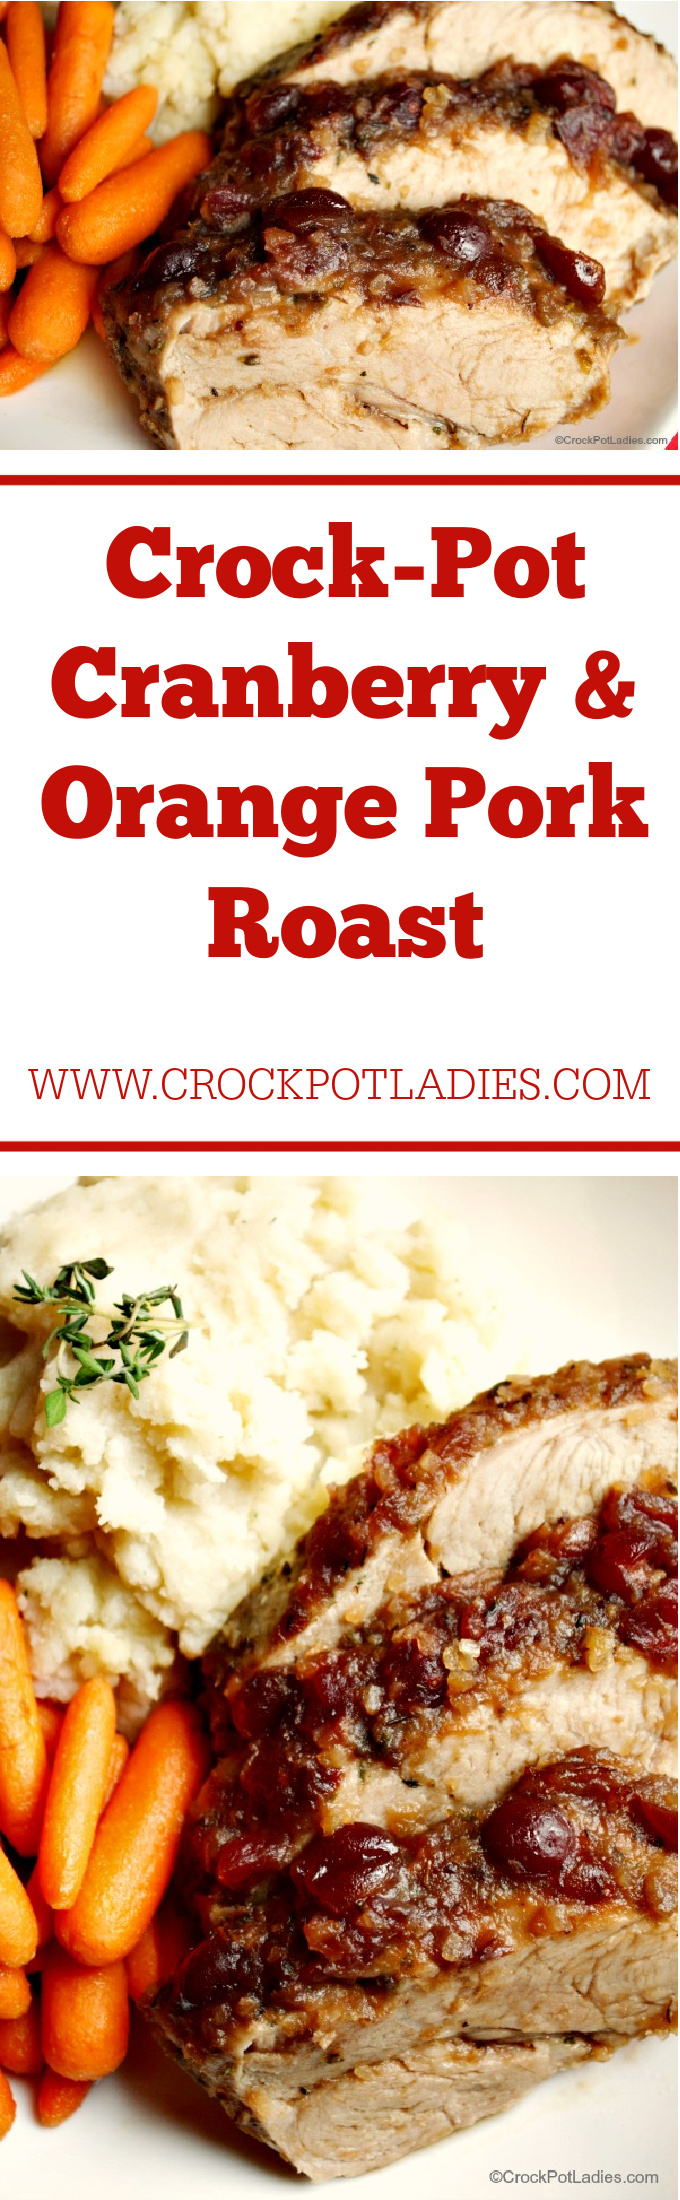 Crock-Pot Cranberry & Orange Pork Roast